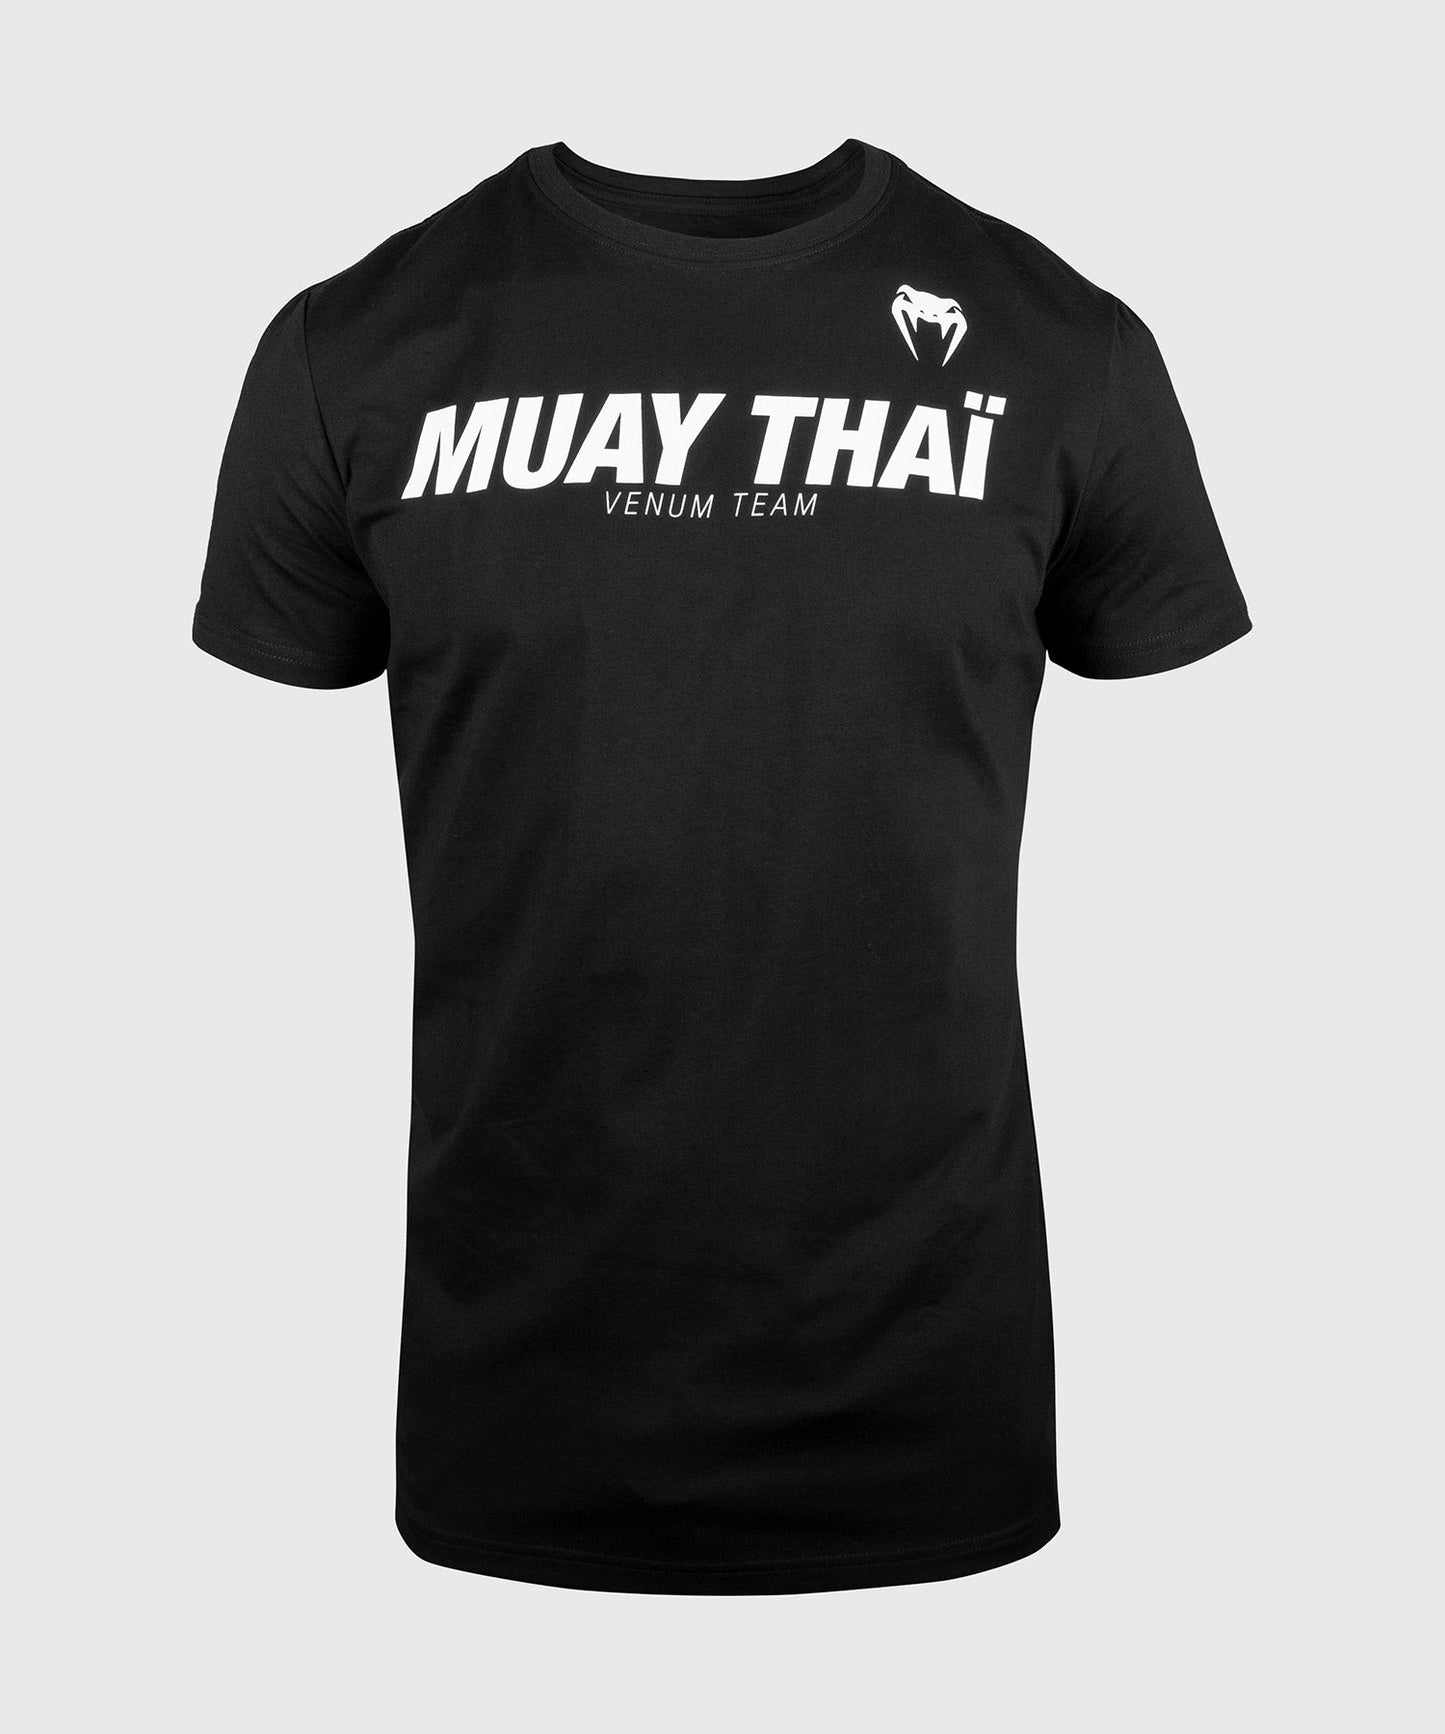 Venum Muay Thai VT T-shirt - Black/White